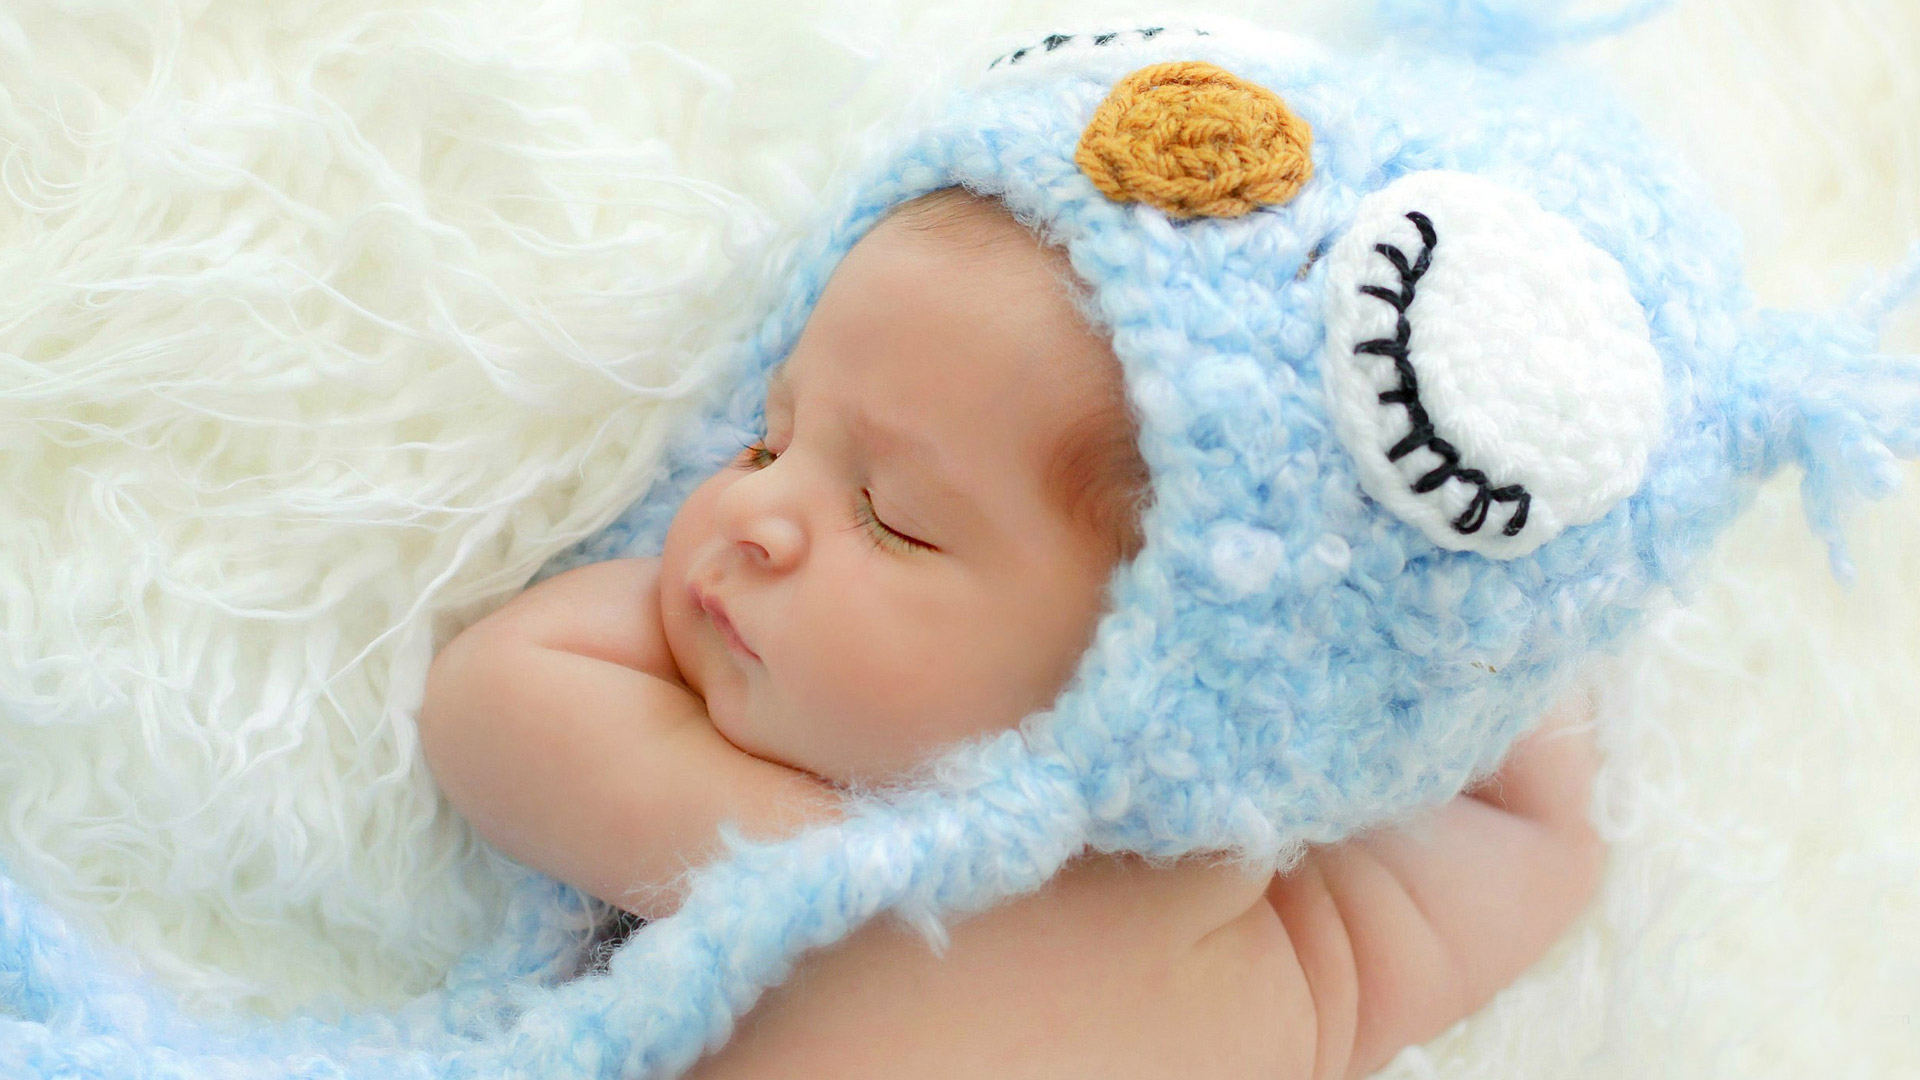 Sleeping Baby Desktop Backgrounds | Download Free Desktop ...